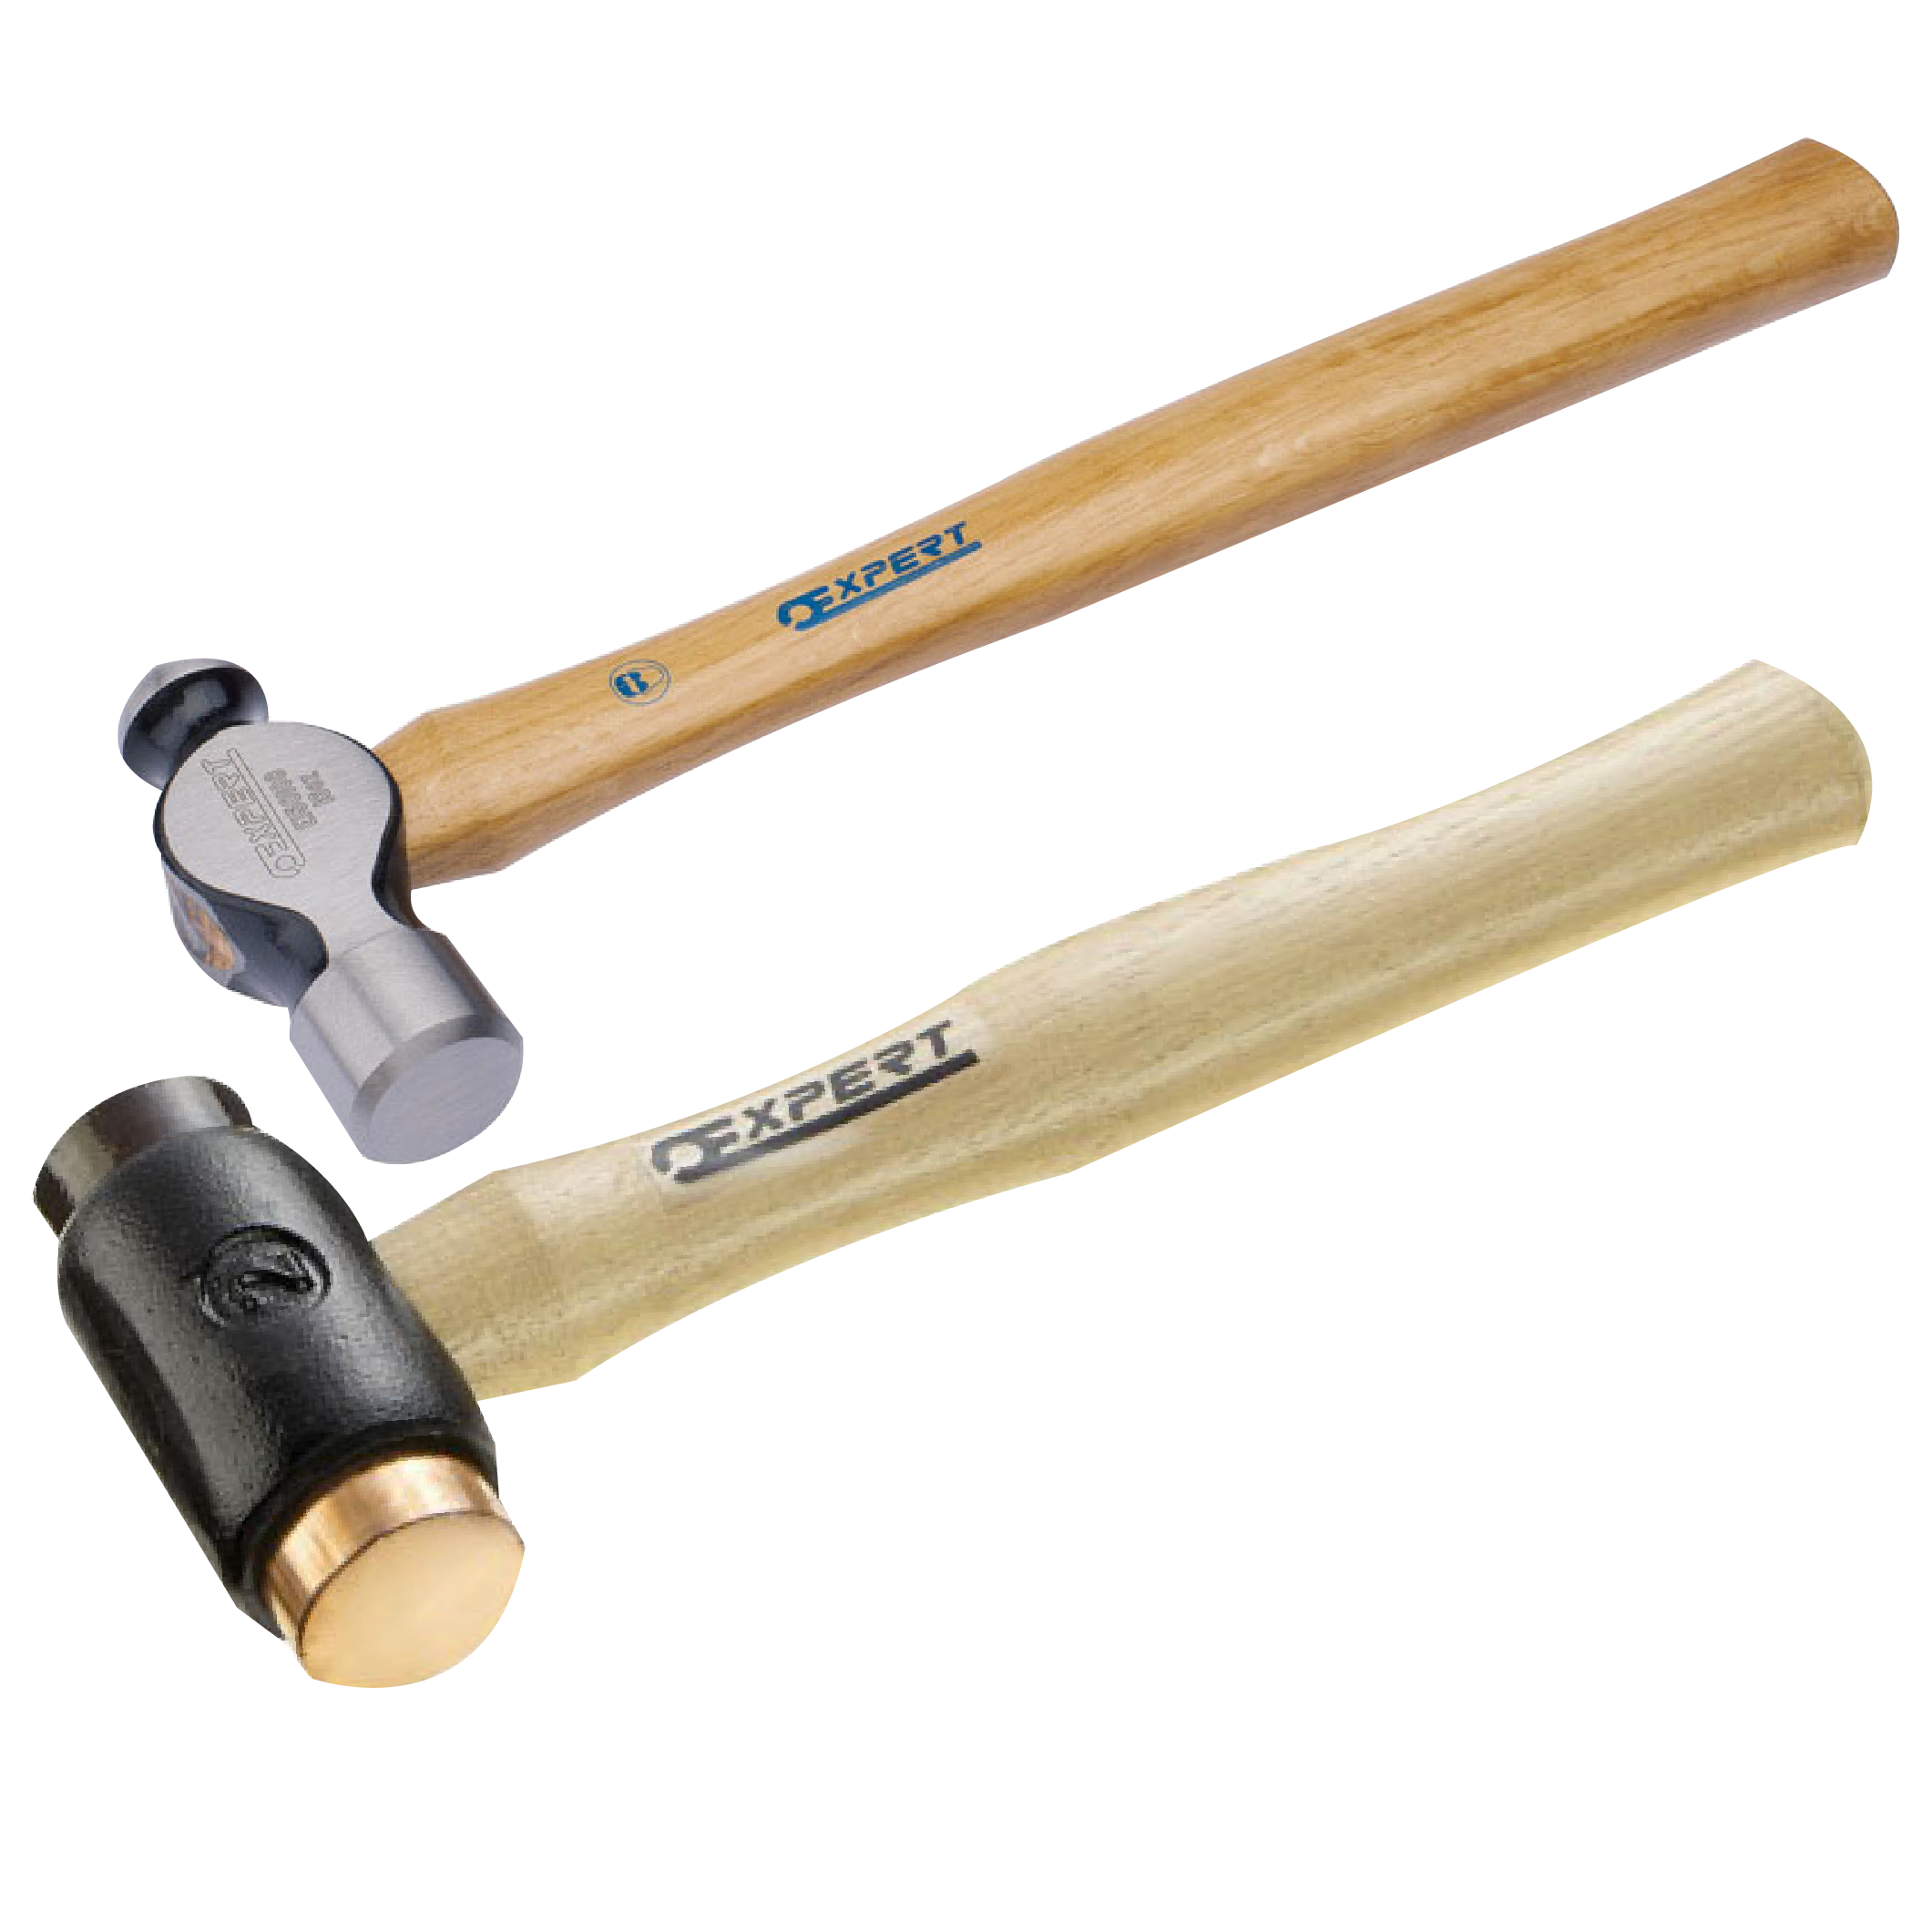 AABTools  GROZ SHID/14/30 Sledge Hammer 14lb / 30in handle length